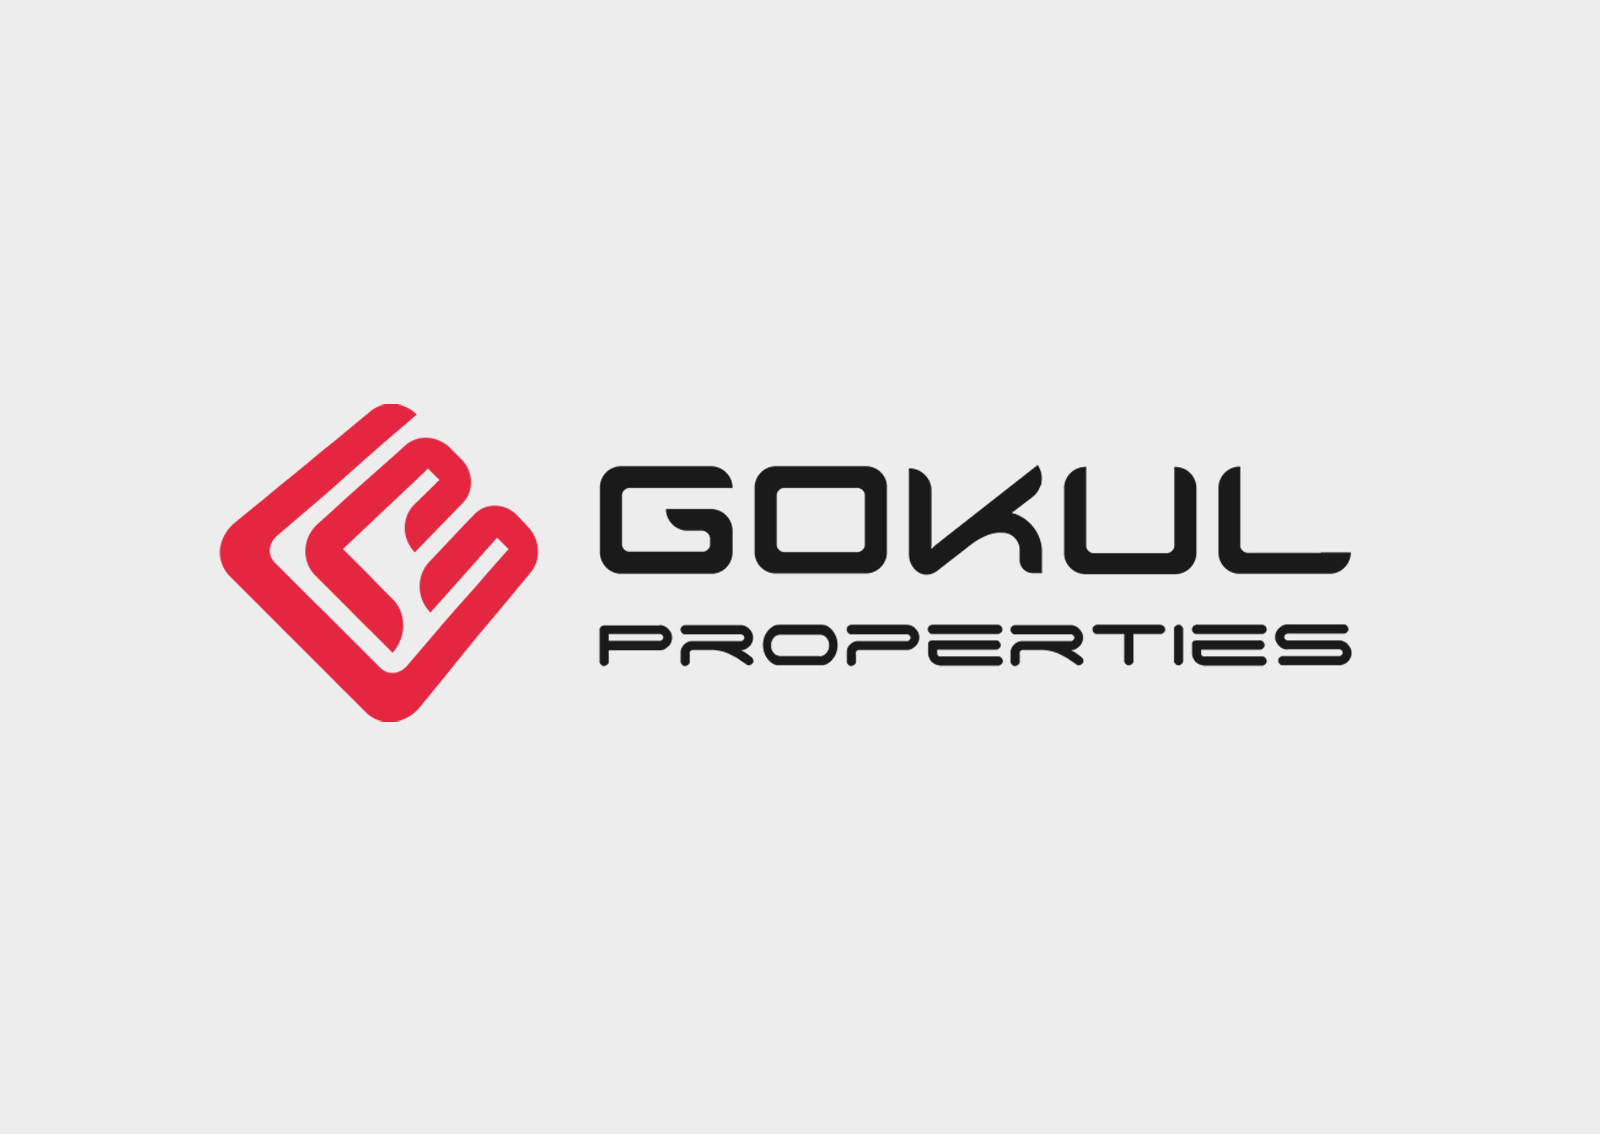 Gokul Properties